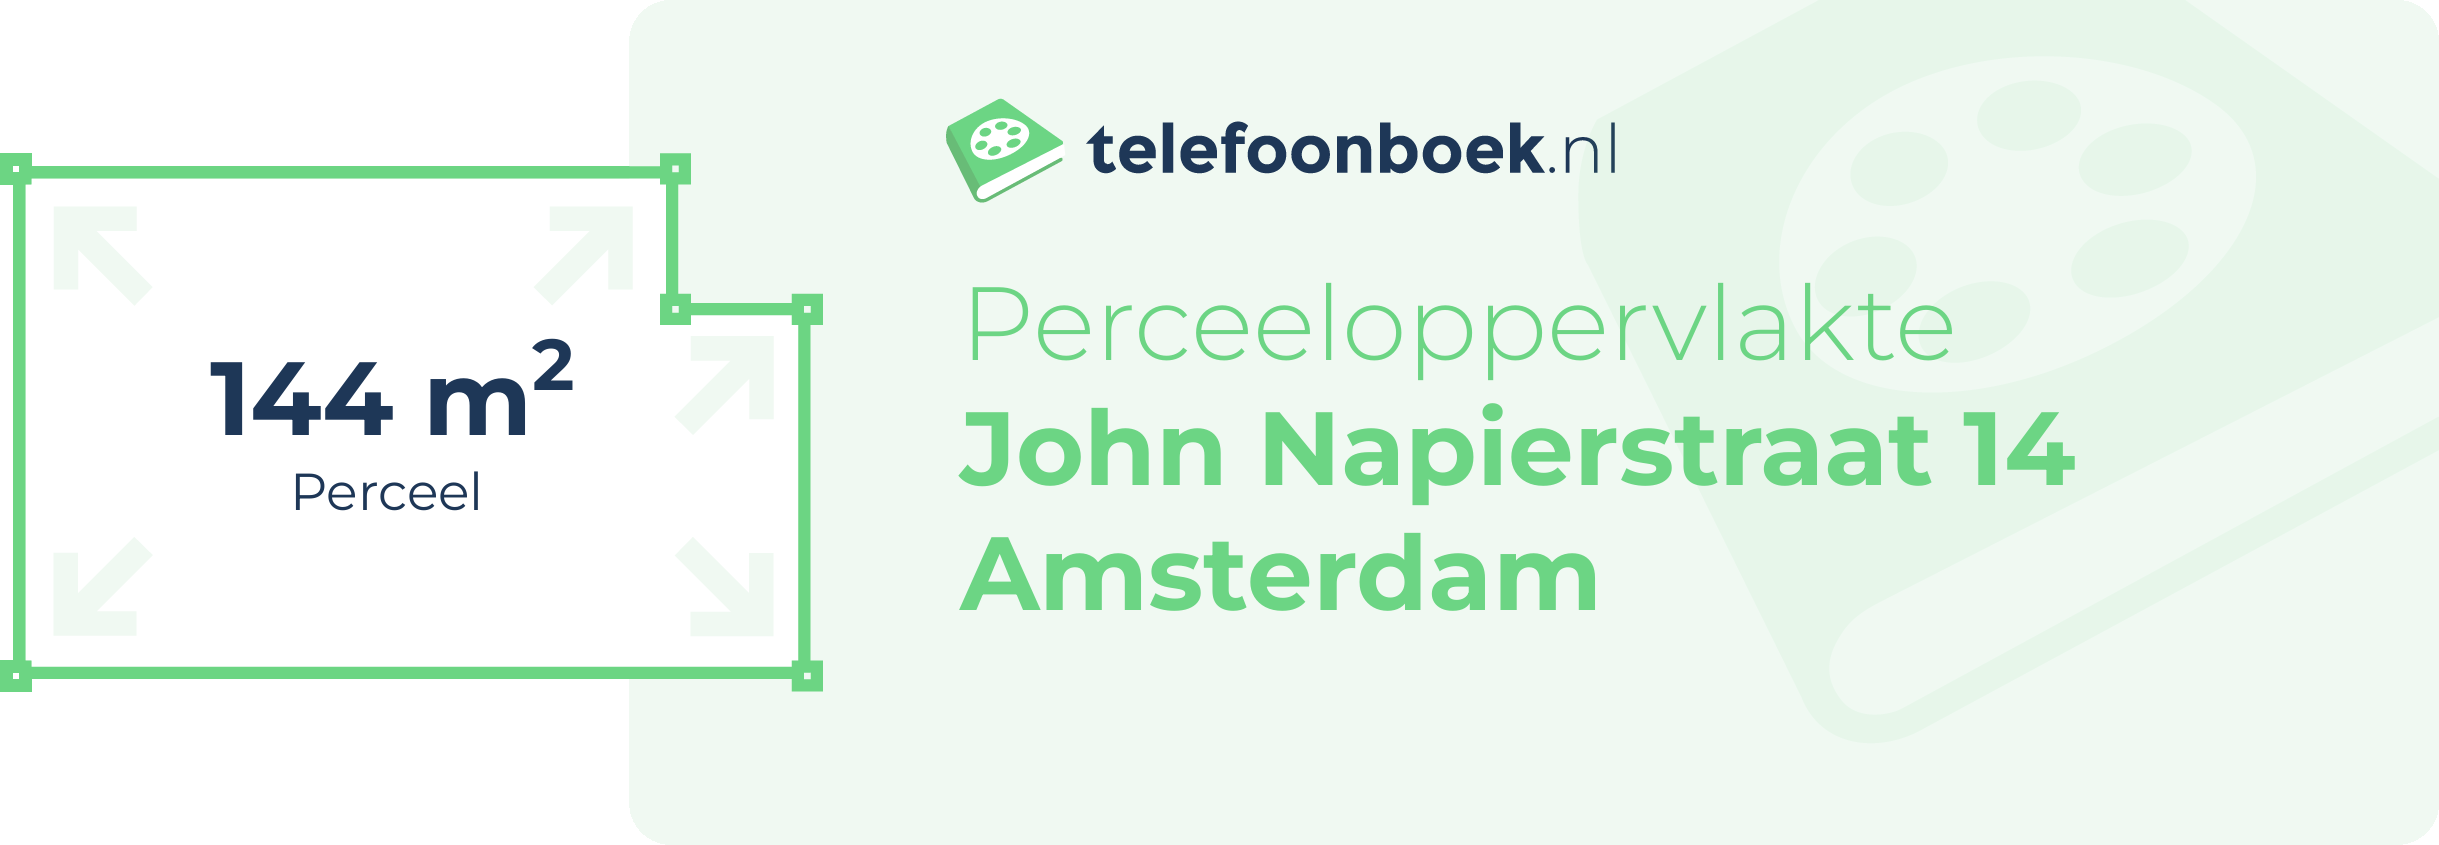 Perceeloppervlakte John Napierstraat 14 Amsterdam